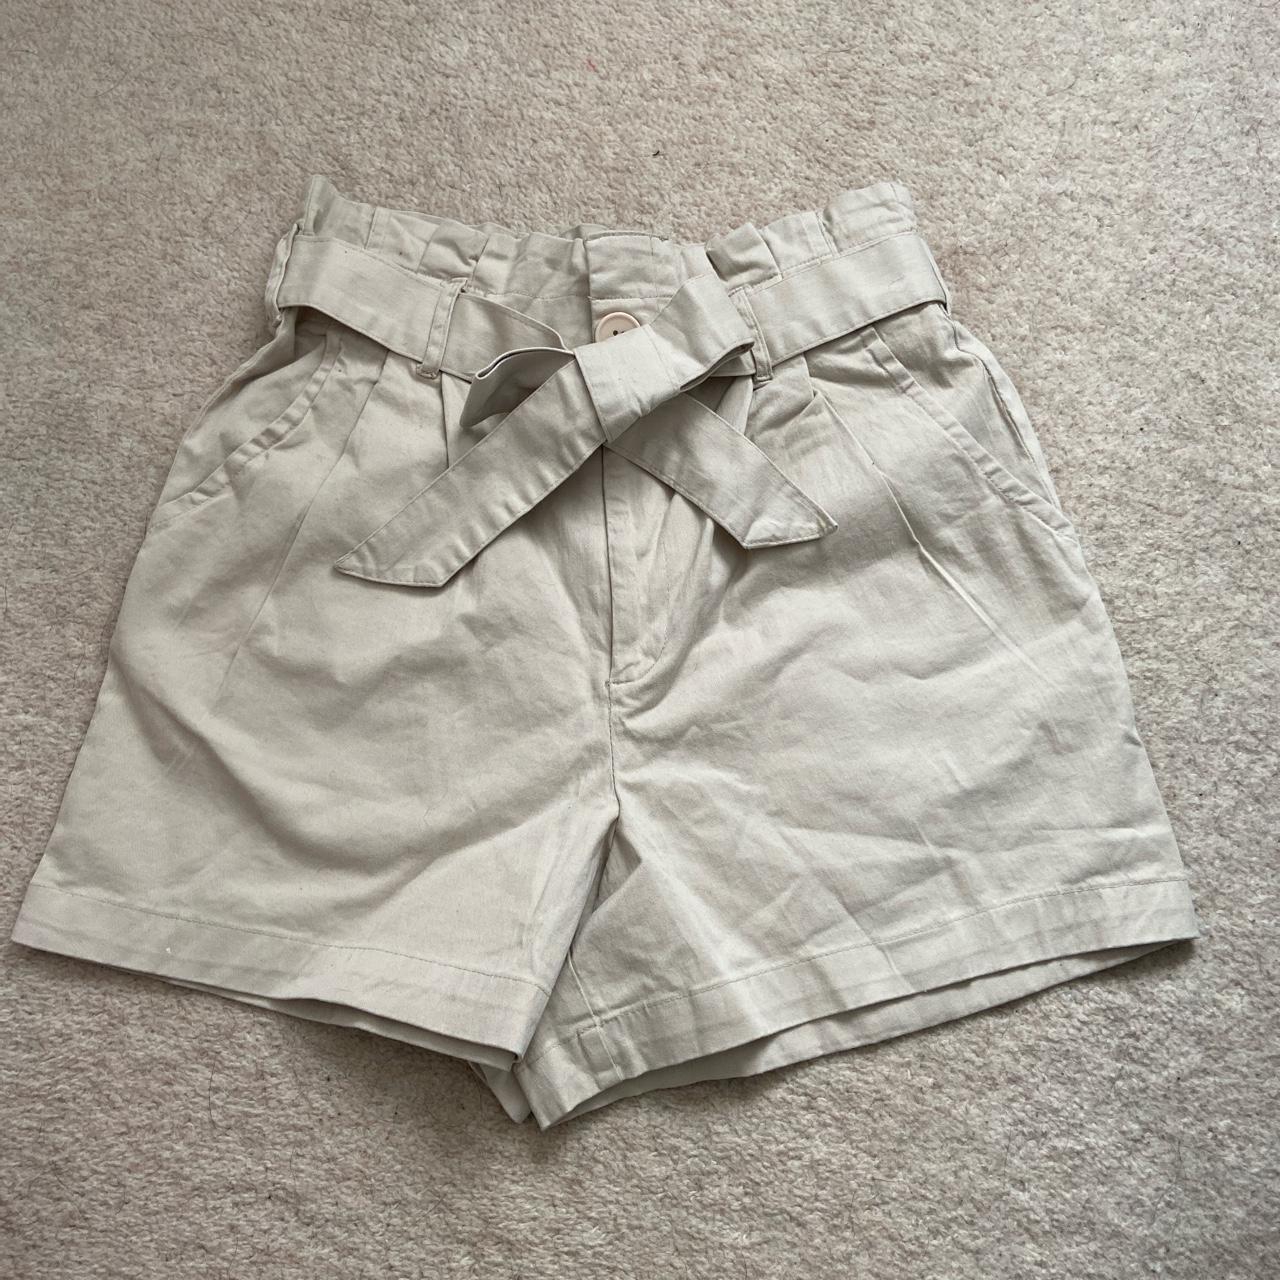 Primark cargo belted shorts Never worn Size 10... - Depop